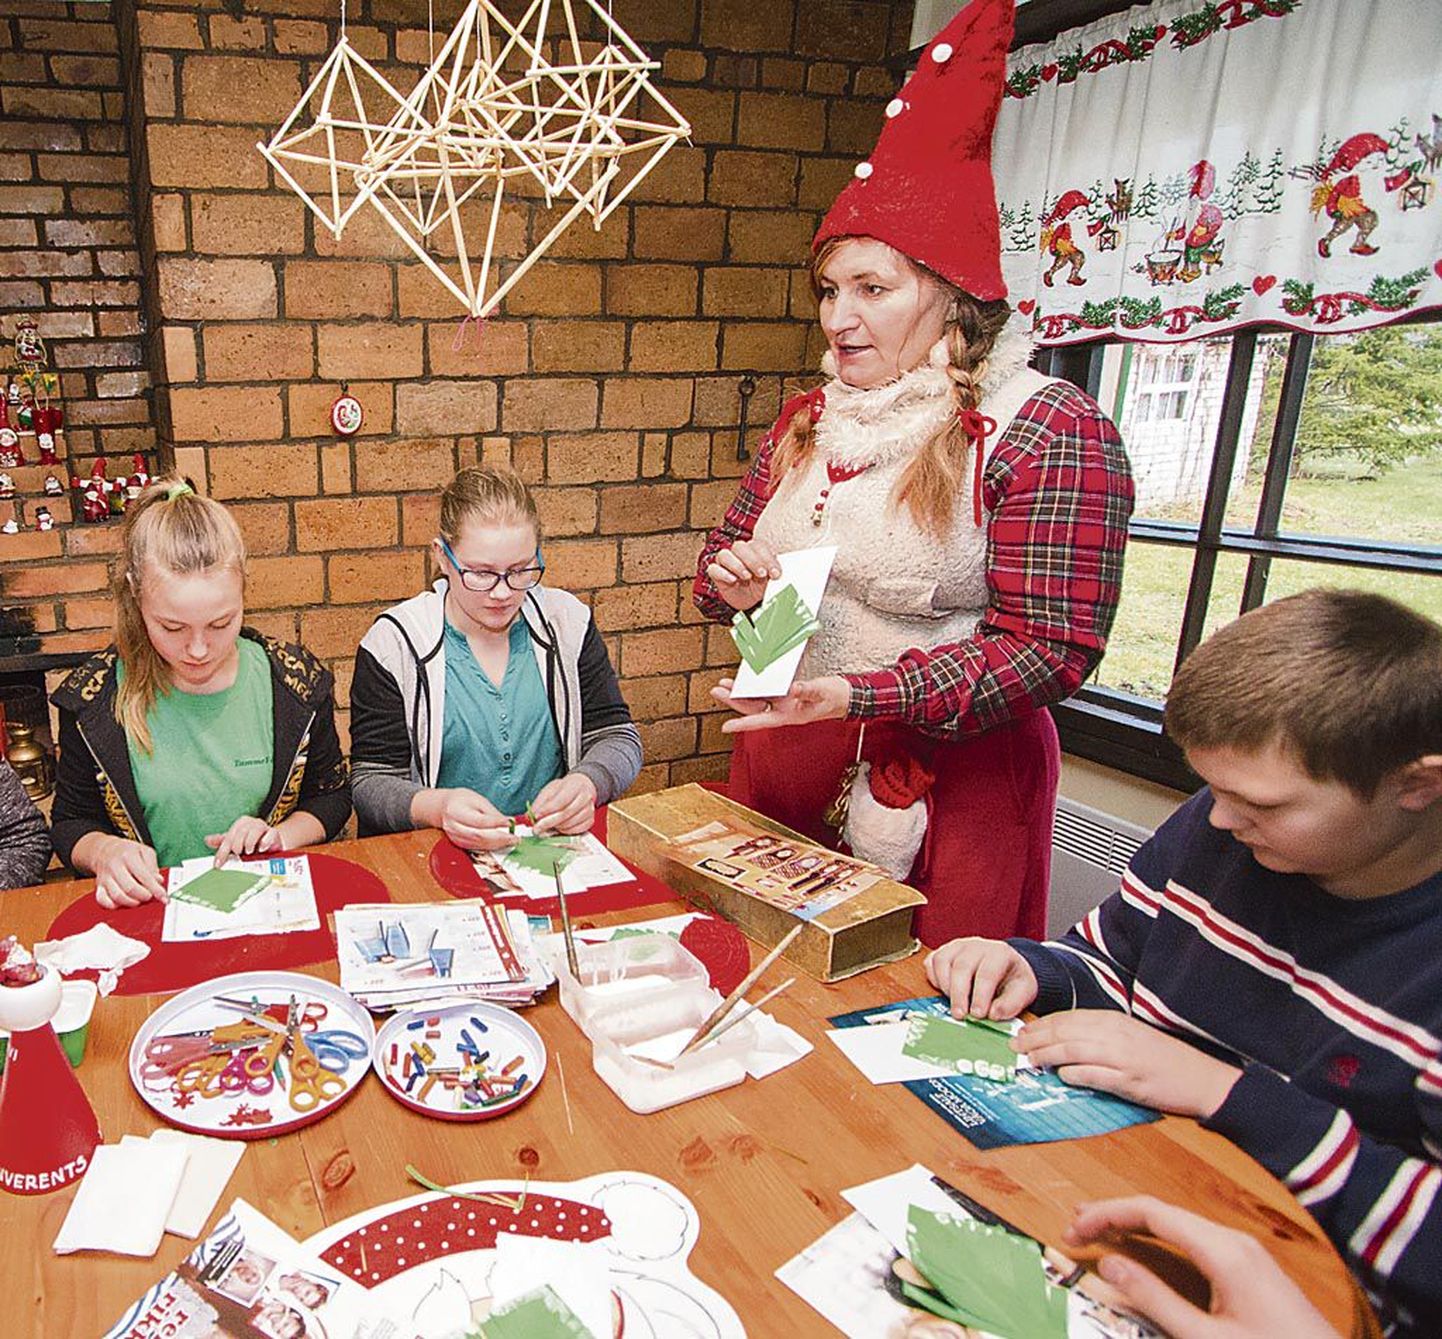 Jõuluprogramme pakuvad nii traditsioonilised jõulumaad kui mõnevõrra teistsugused külastuskeskused.